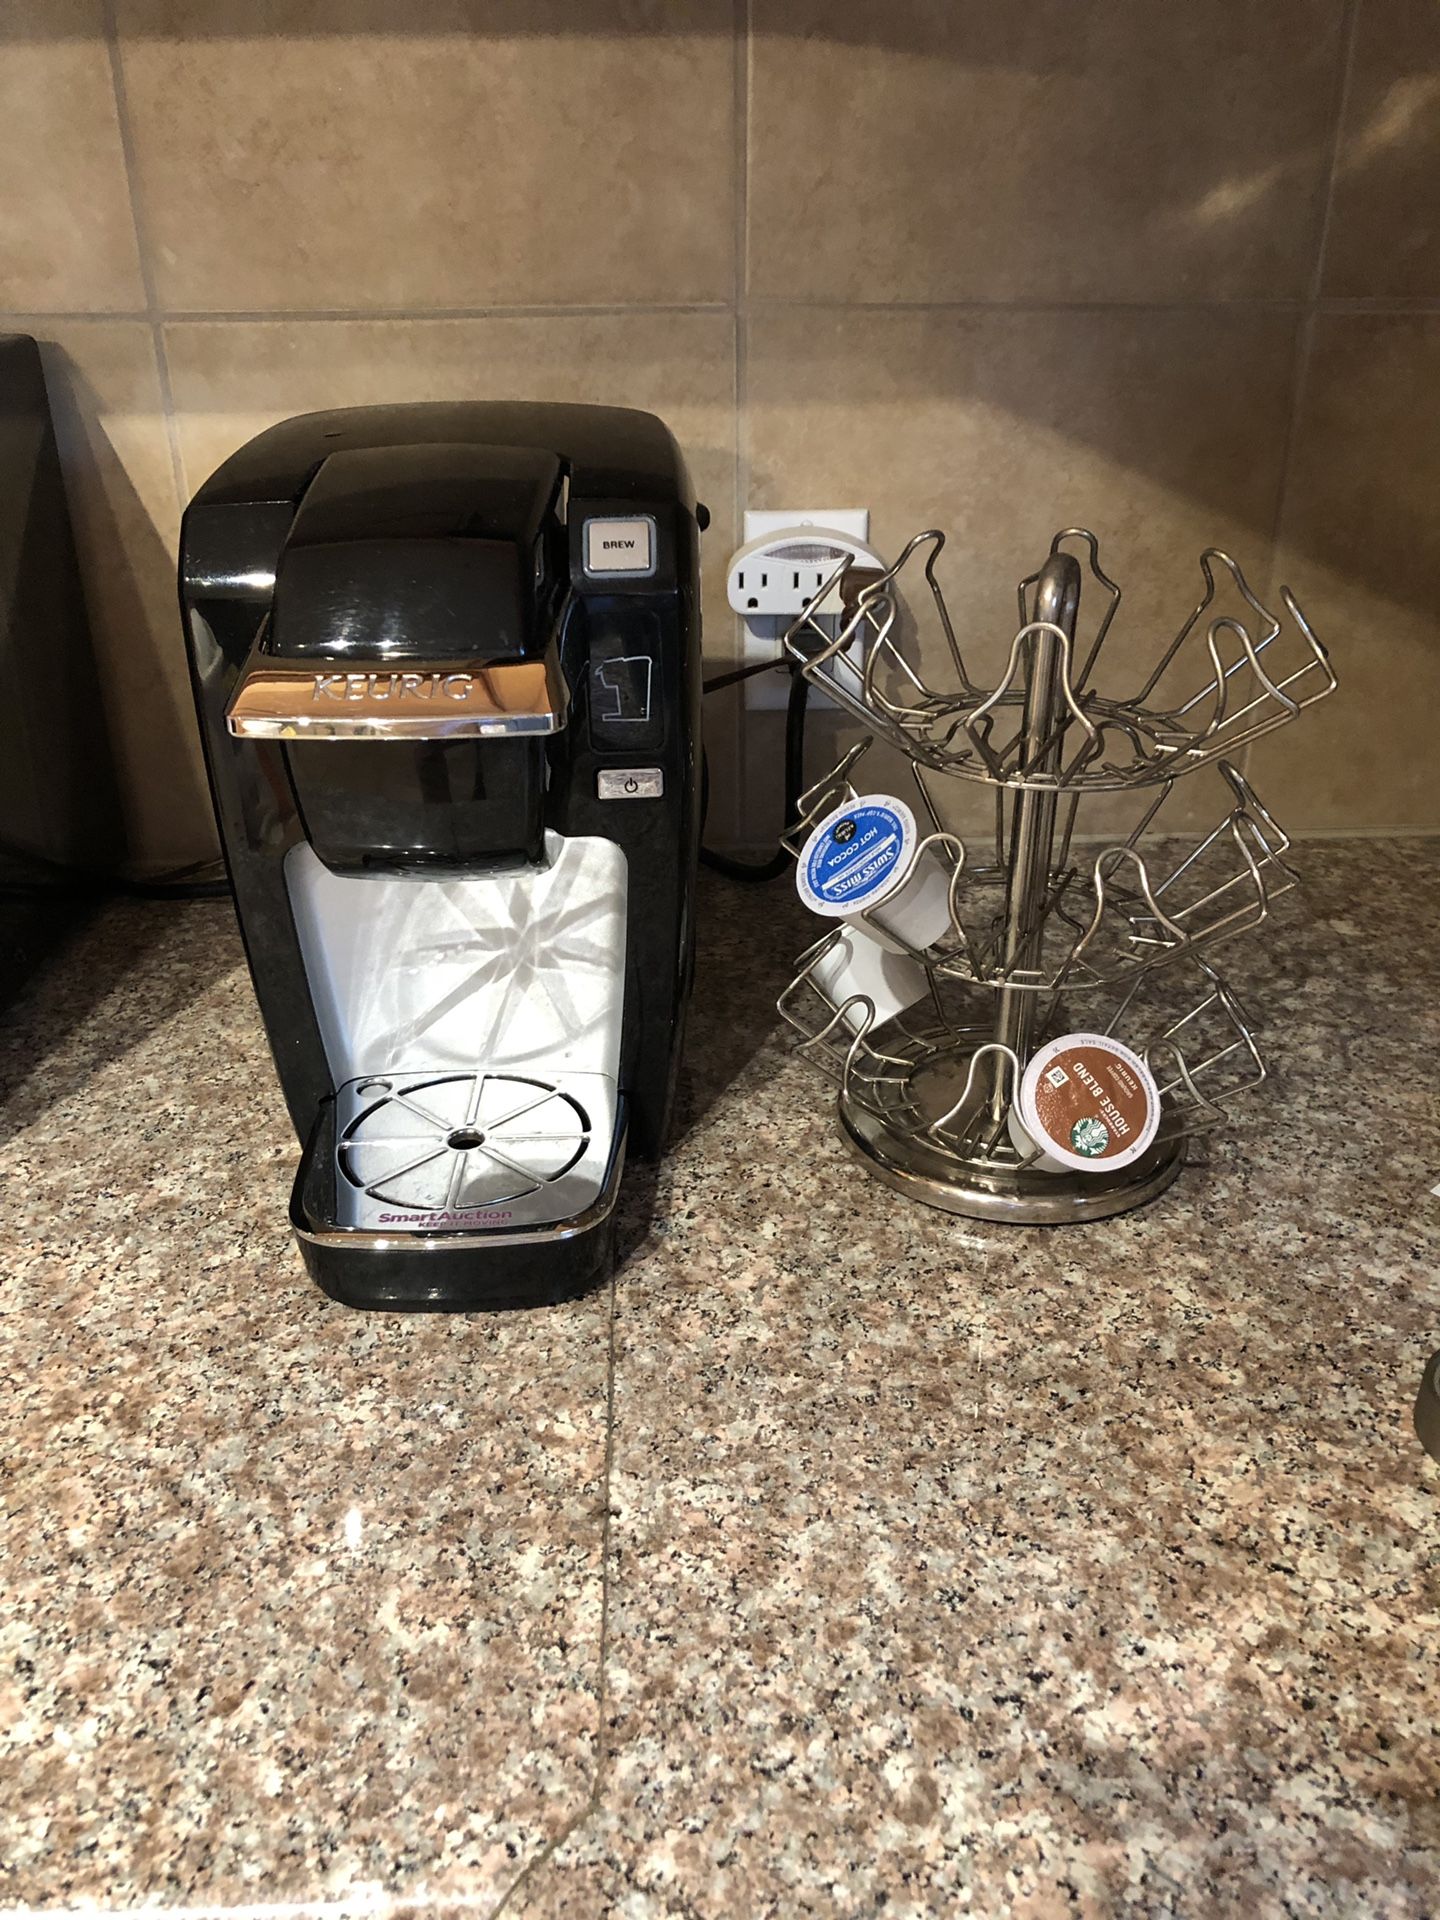 Keurig Single Serve K-Cup Coffee Maker OK – cup carousel